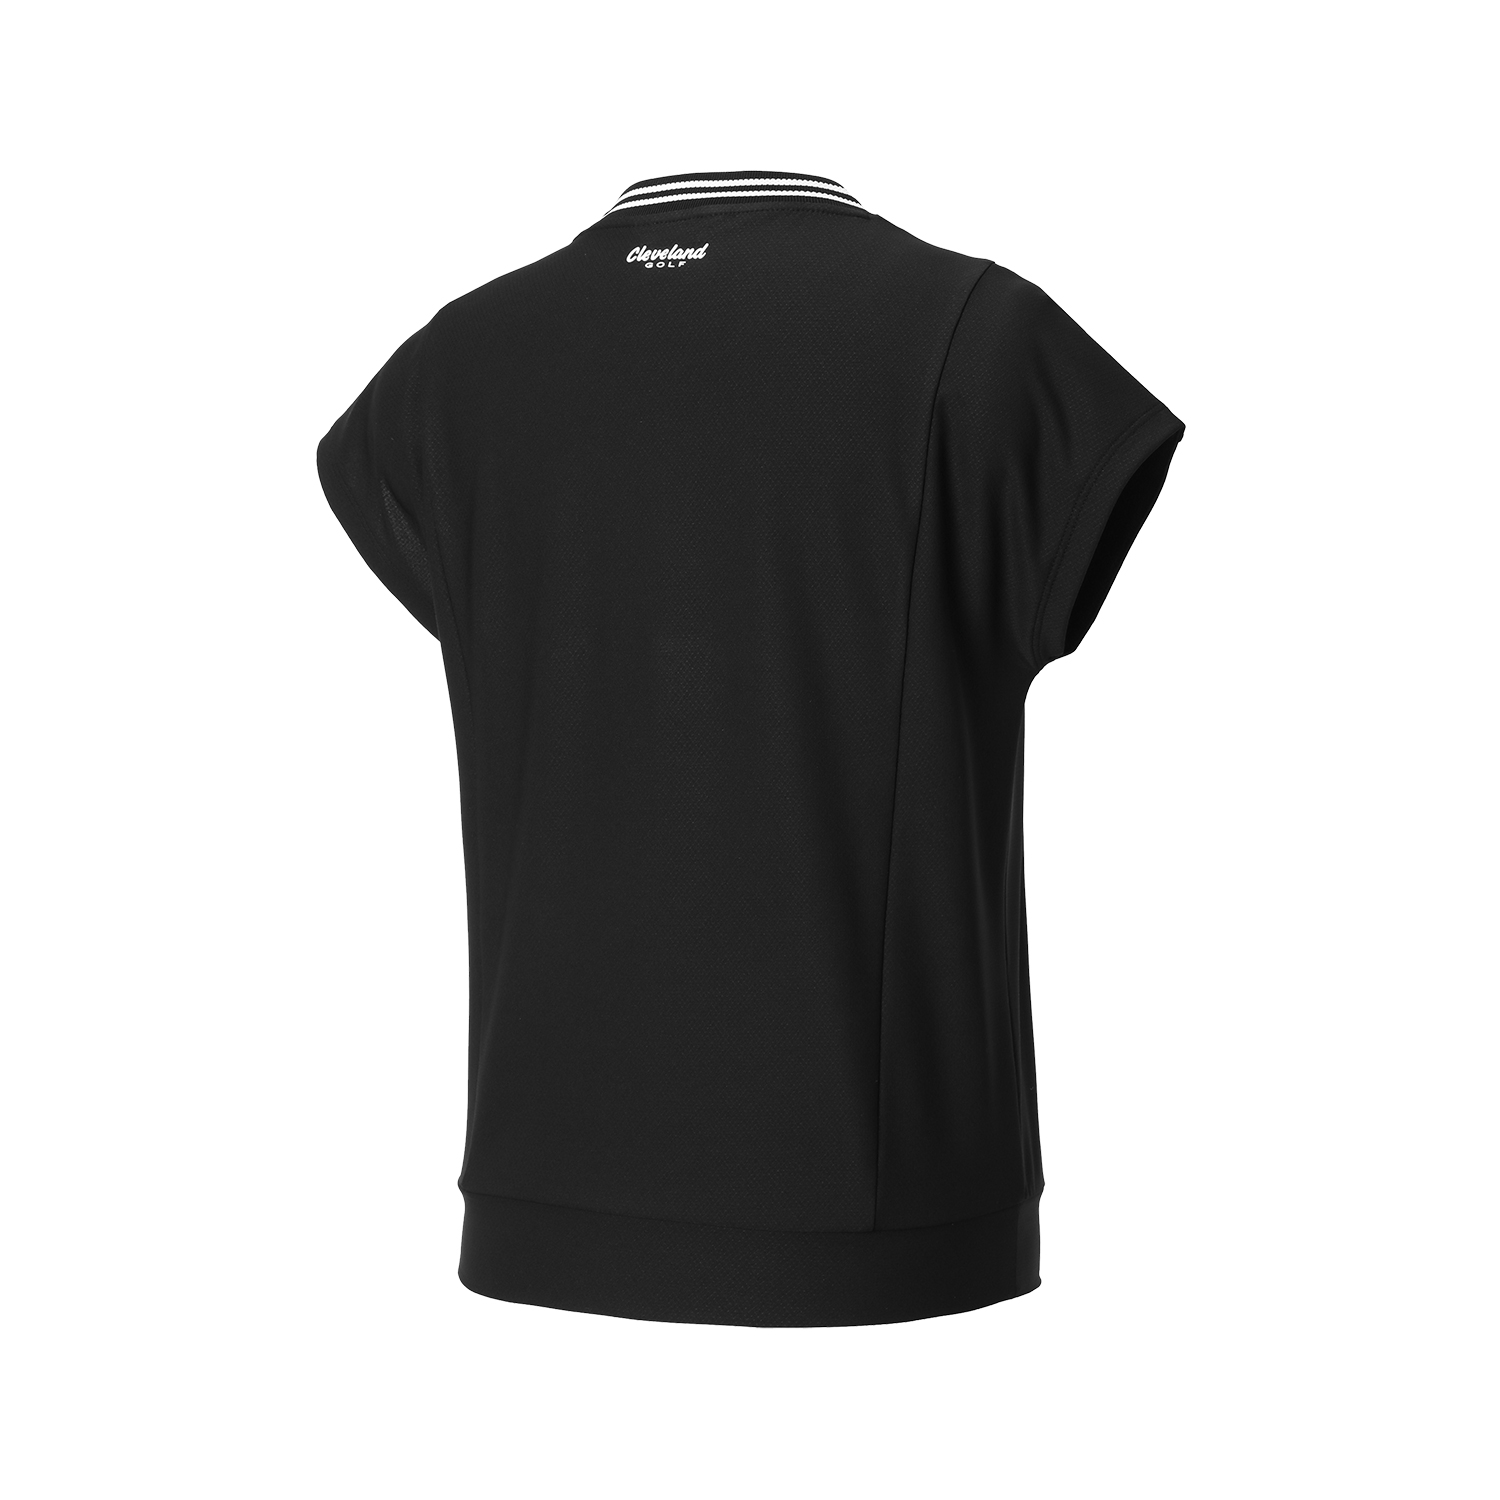 [10% 추가할인] 온라인단독 폴리스판 배색라운드 여성 민소매 티셔츠 블랙_CGWST42975BK